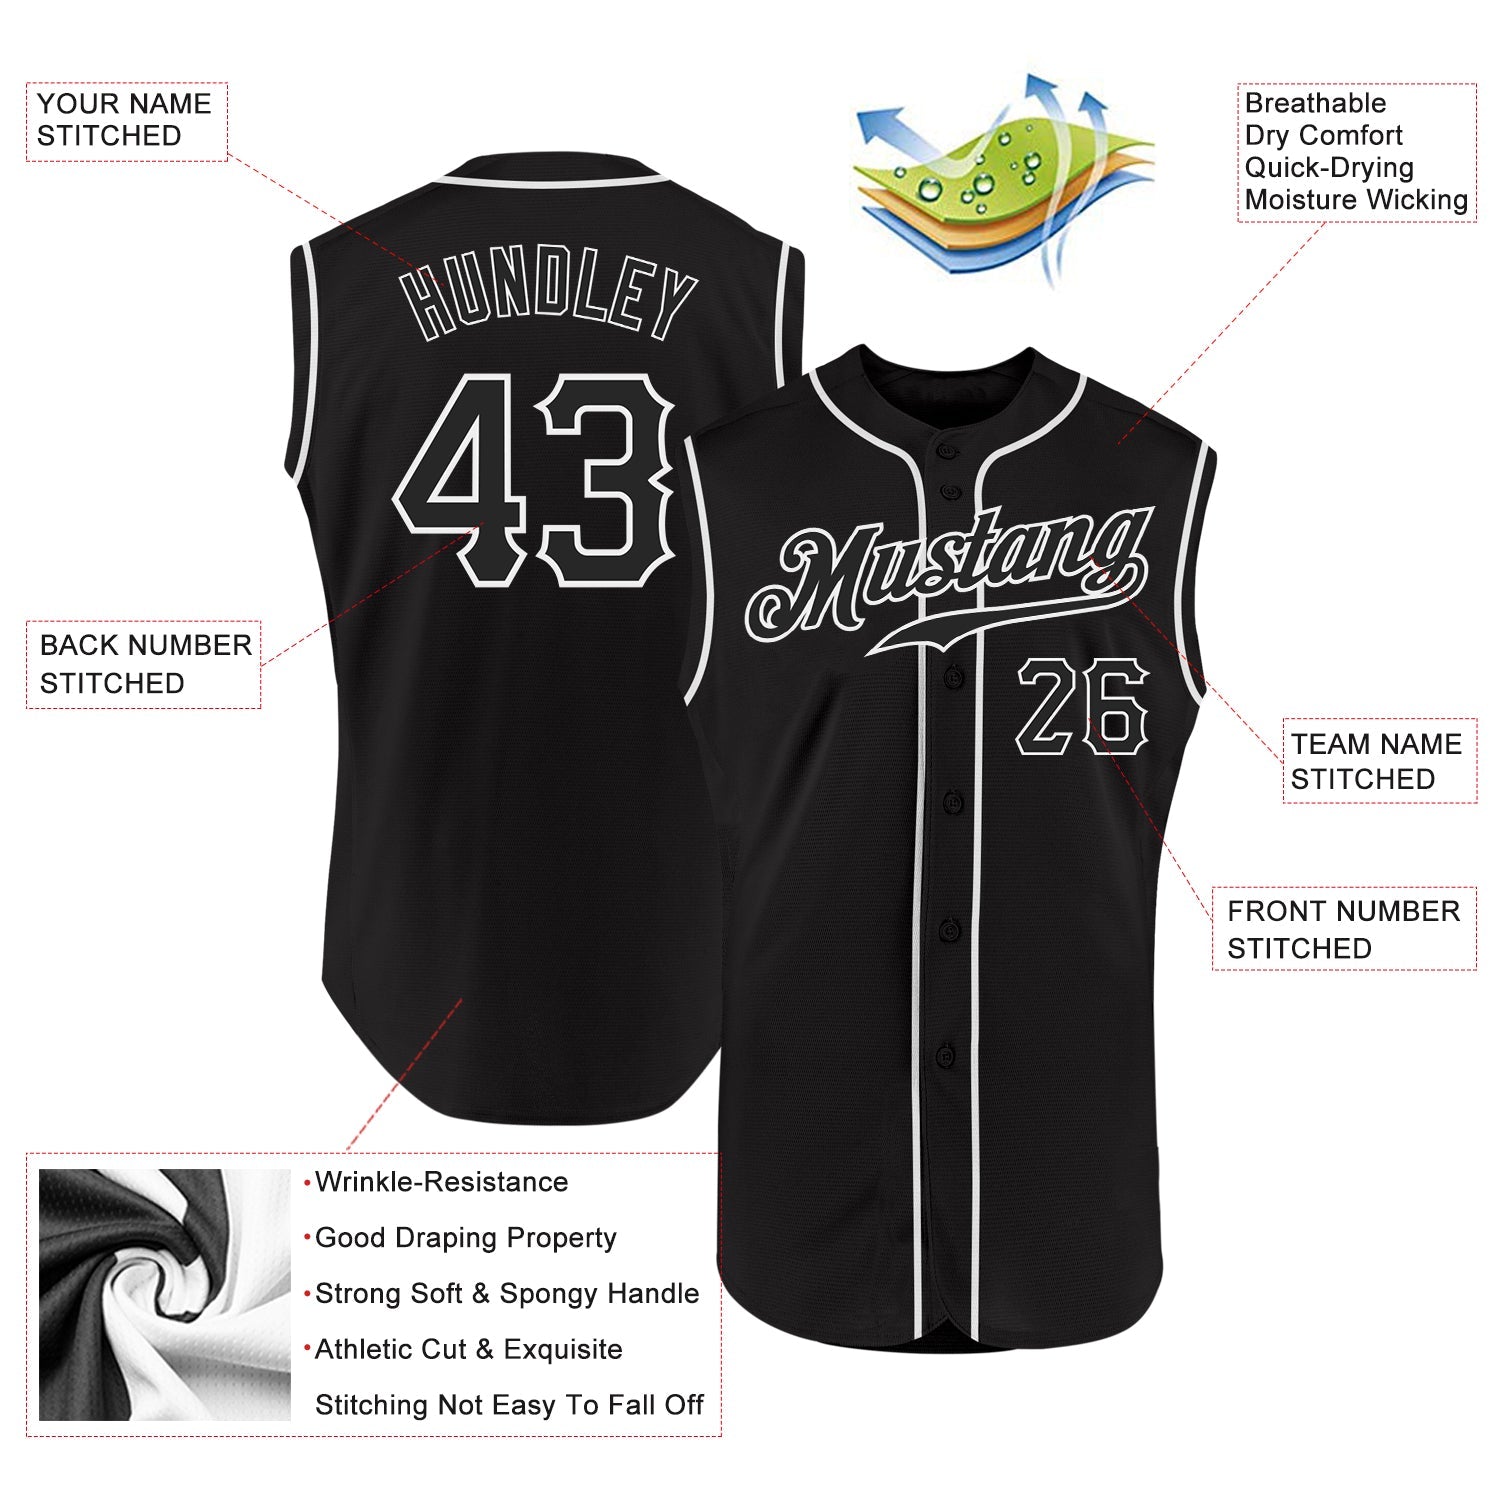 Noir personnalisé noir-blanc authentique maillot de baseball sans manches